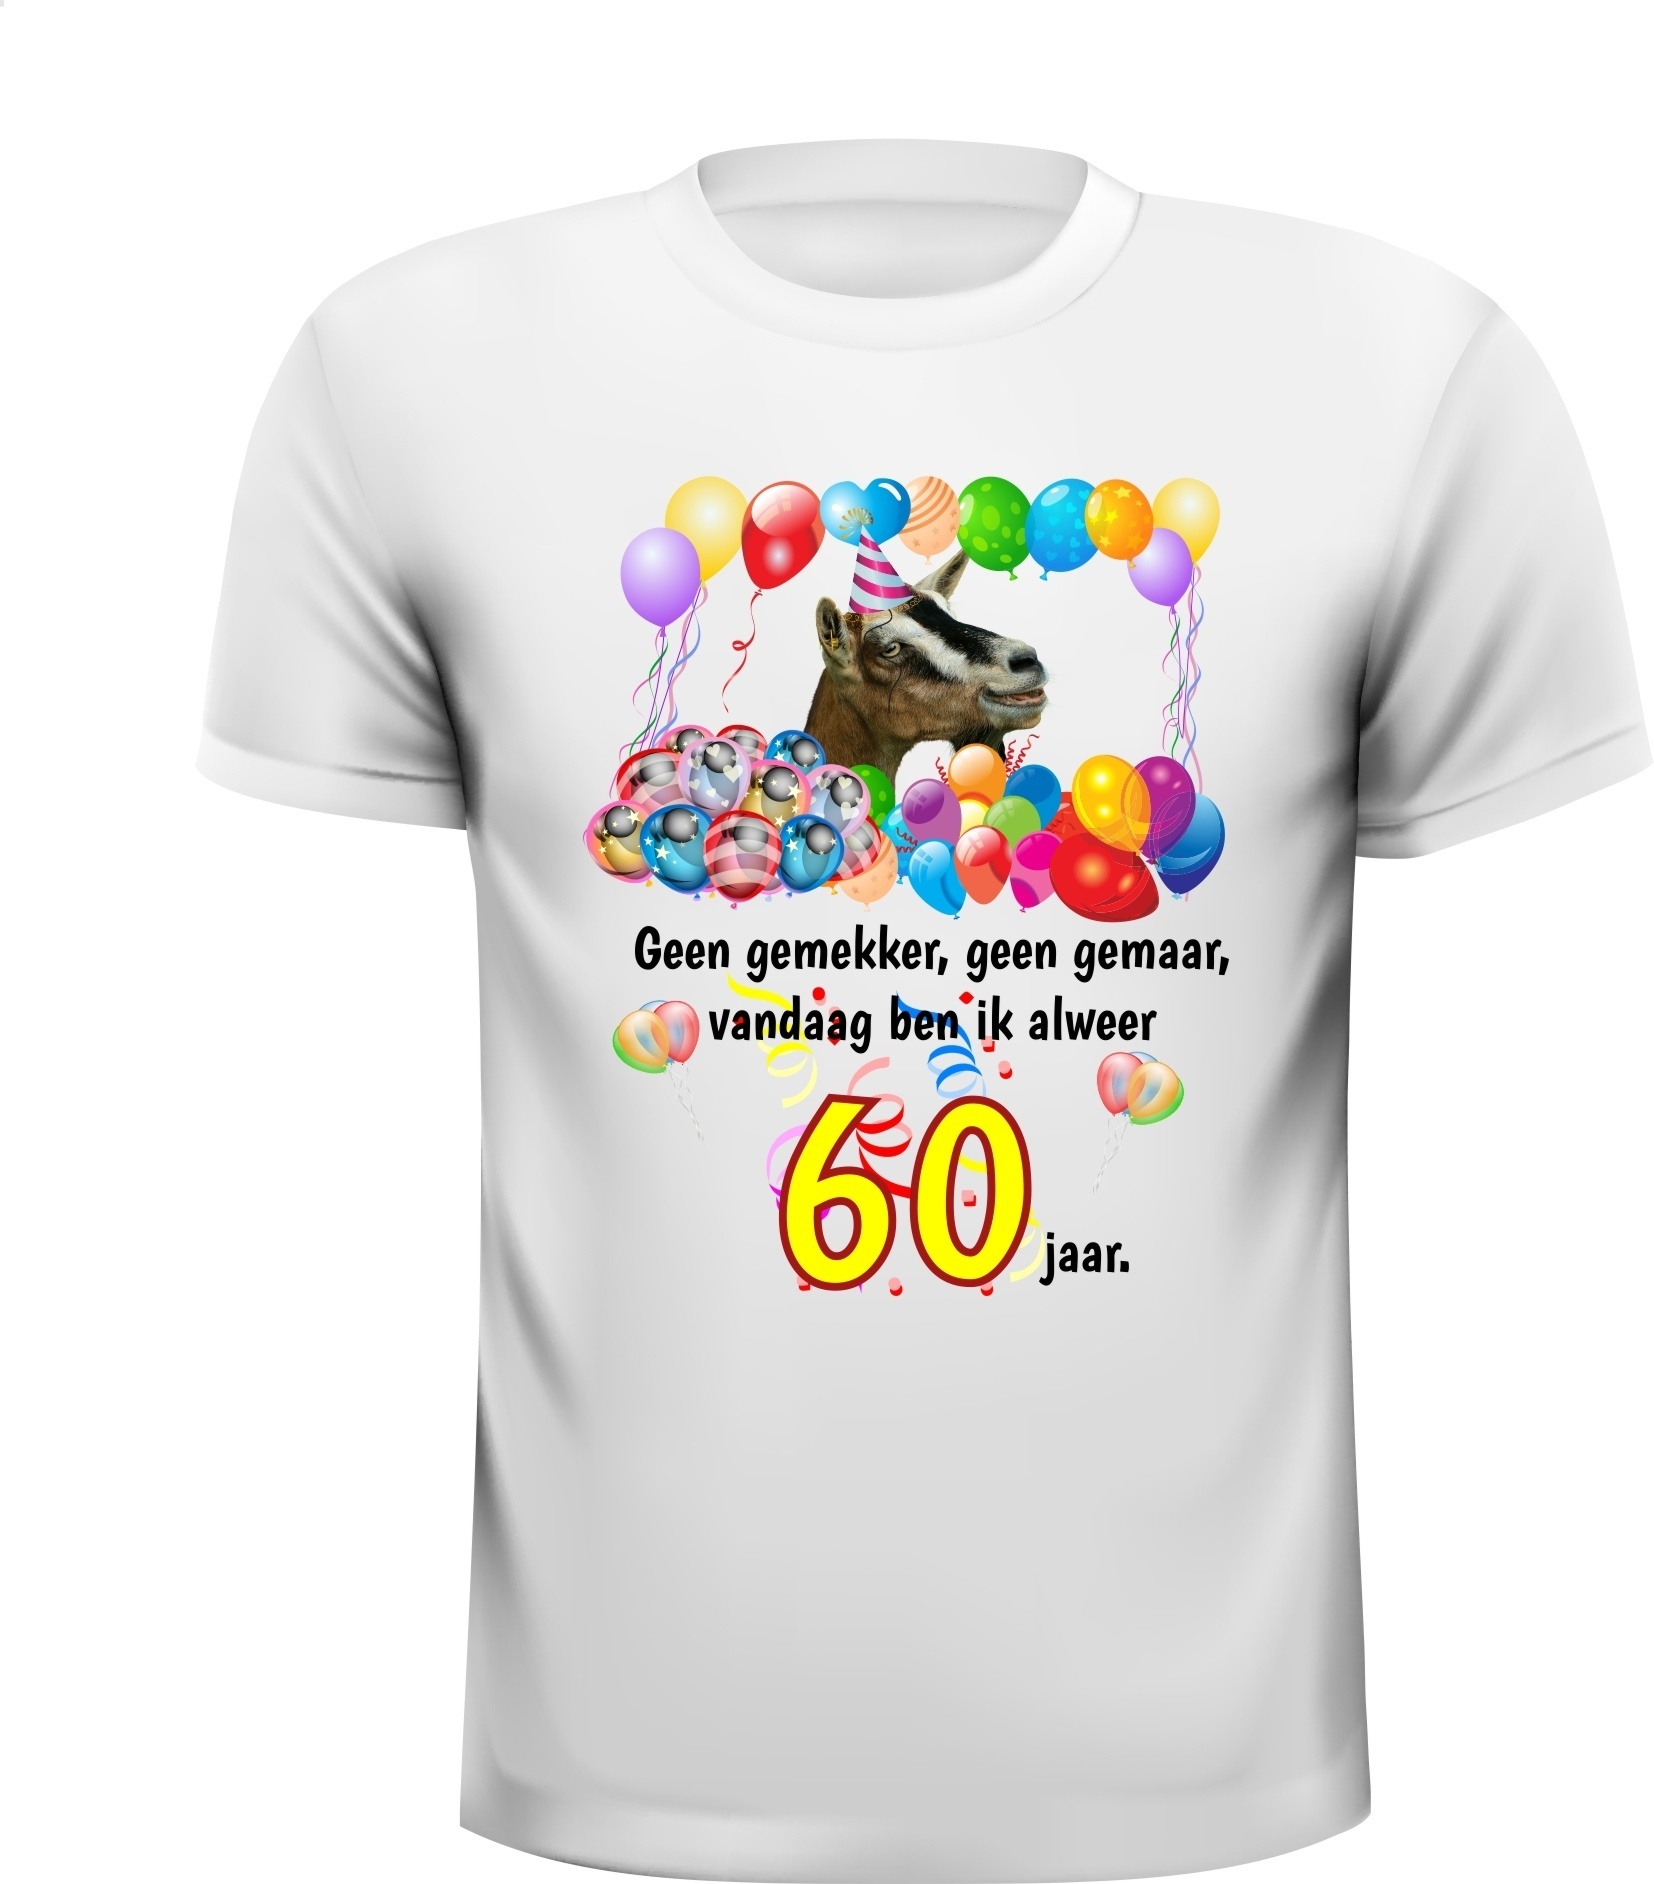 Feestelijk verjaardag shirt voor een leeftijd van zestig jaar